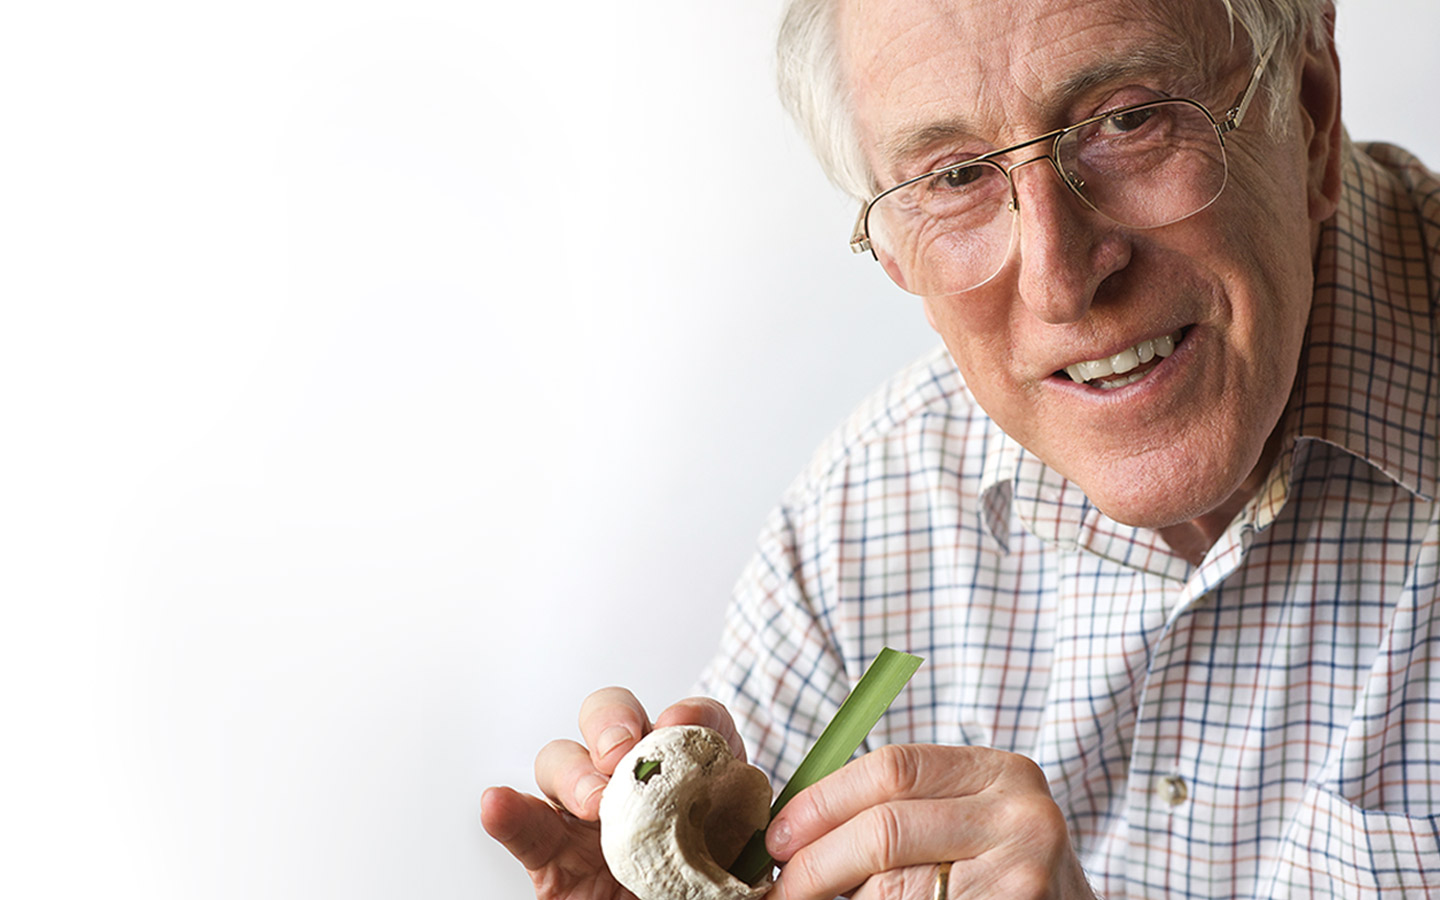 ศาสตราจารย์ Graeme Clark ปักใบหญ้าลงในเปลือกหอย